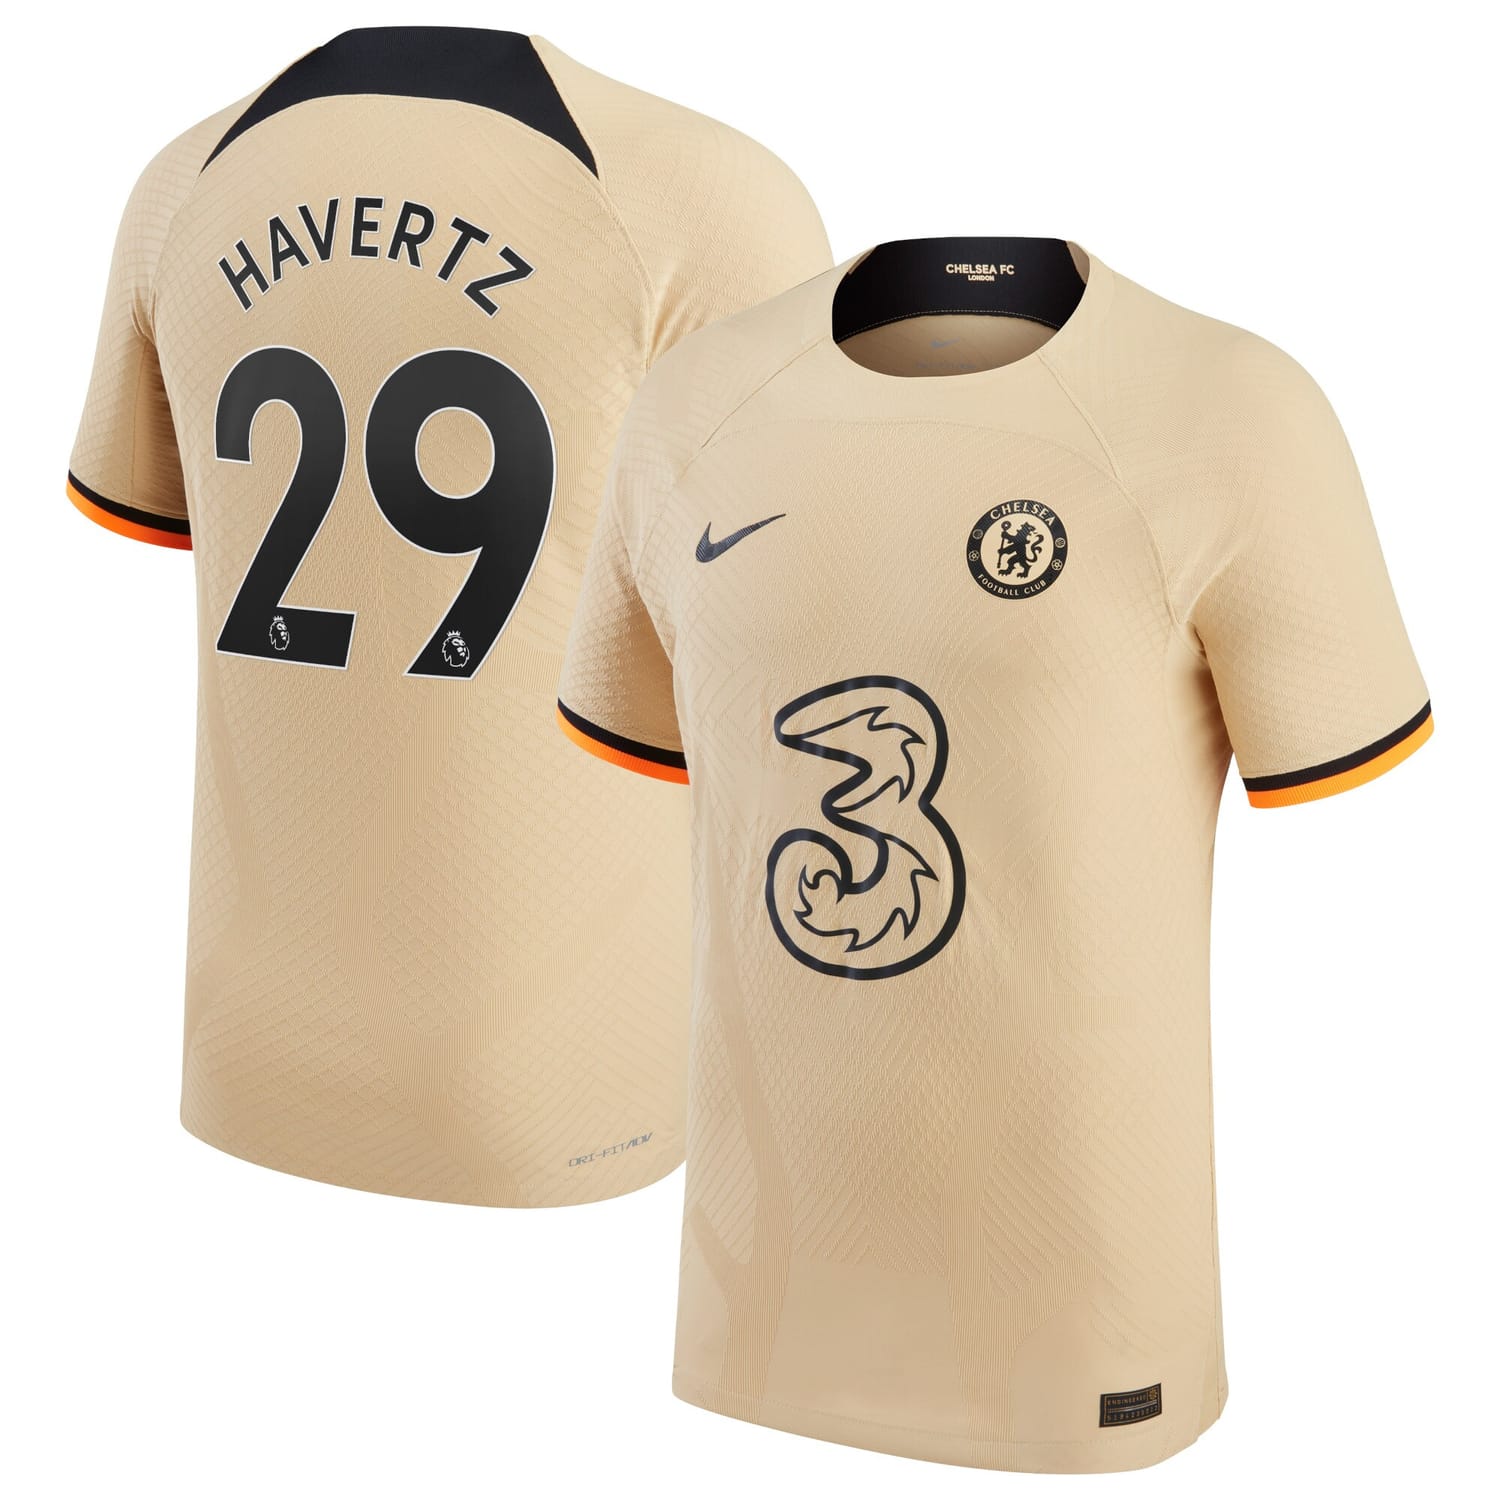 Premier League Chelsea Third Authentic Jersey Shirt 2022-23 player Kai Havertz 29 printing for Men